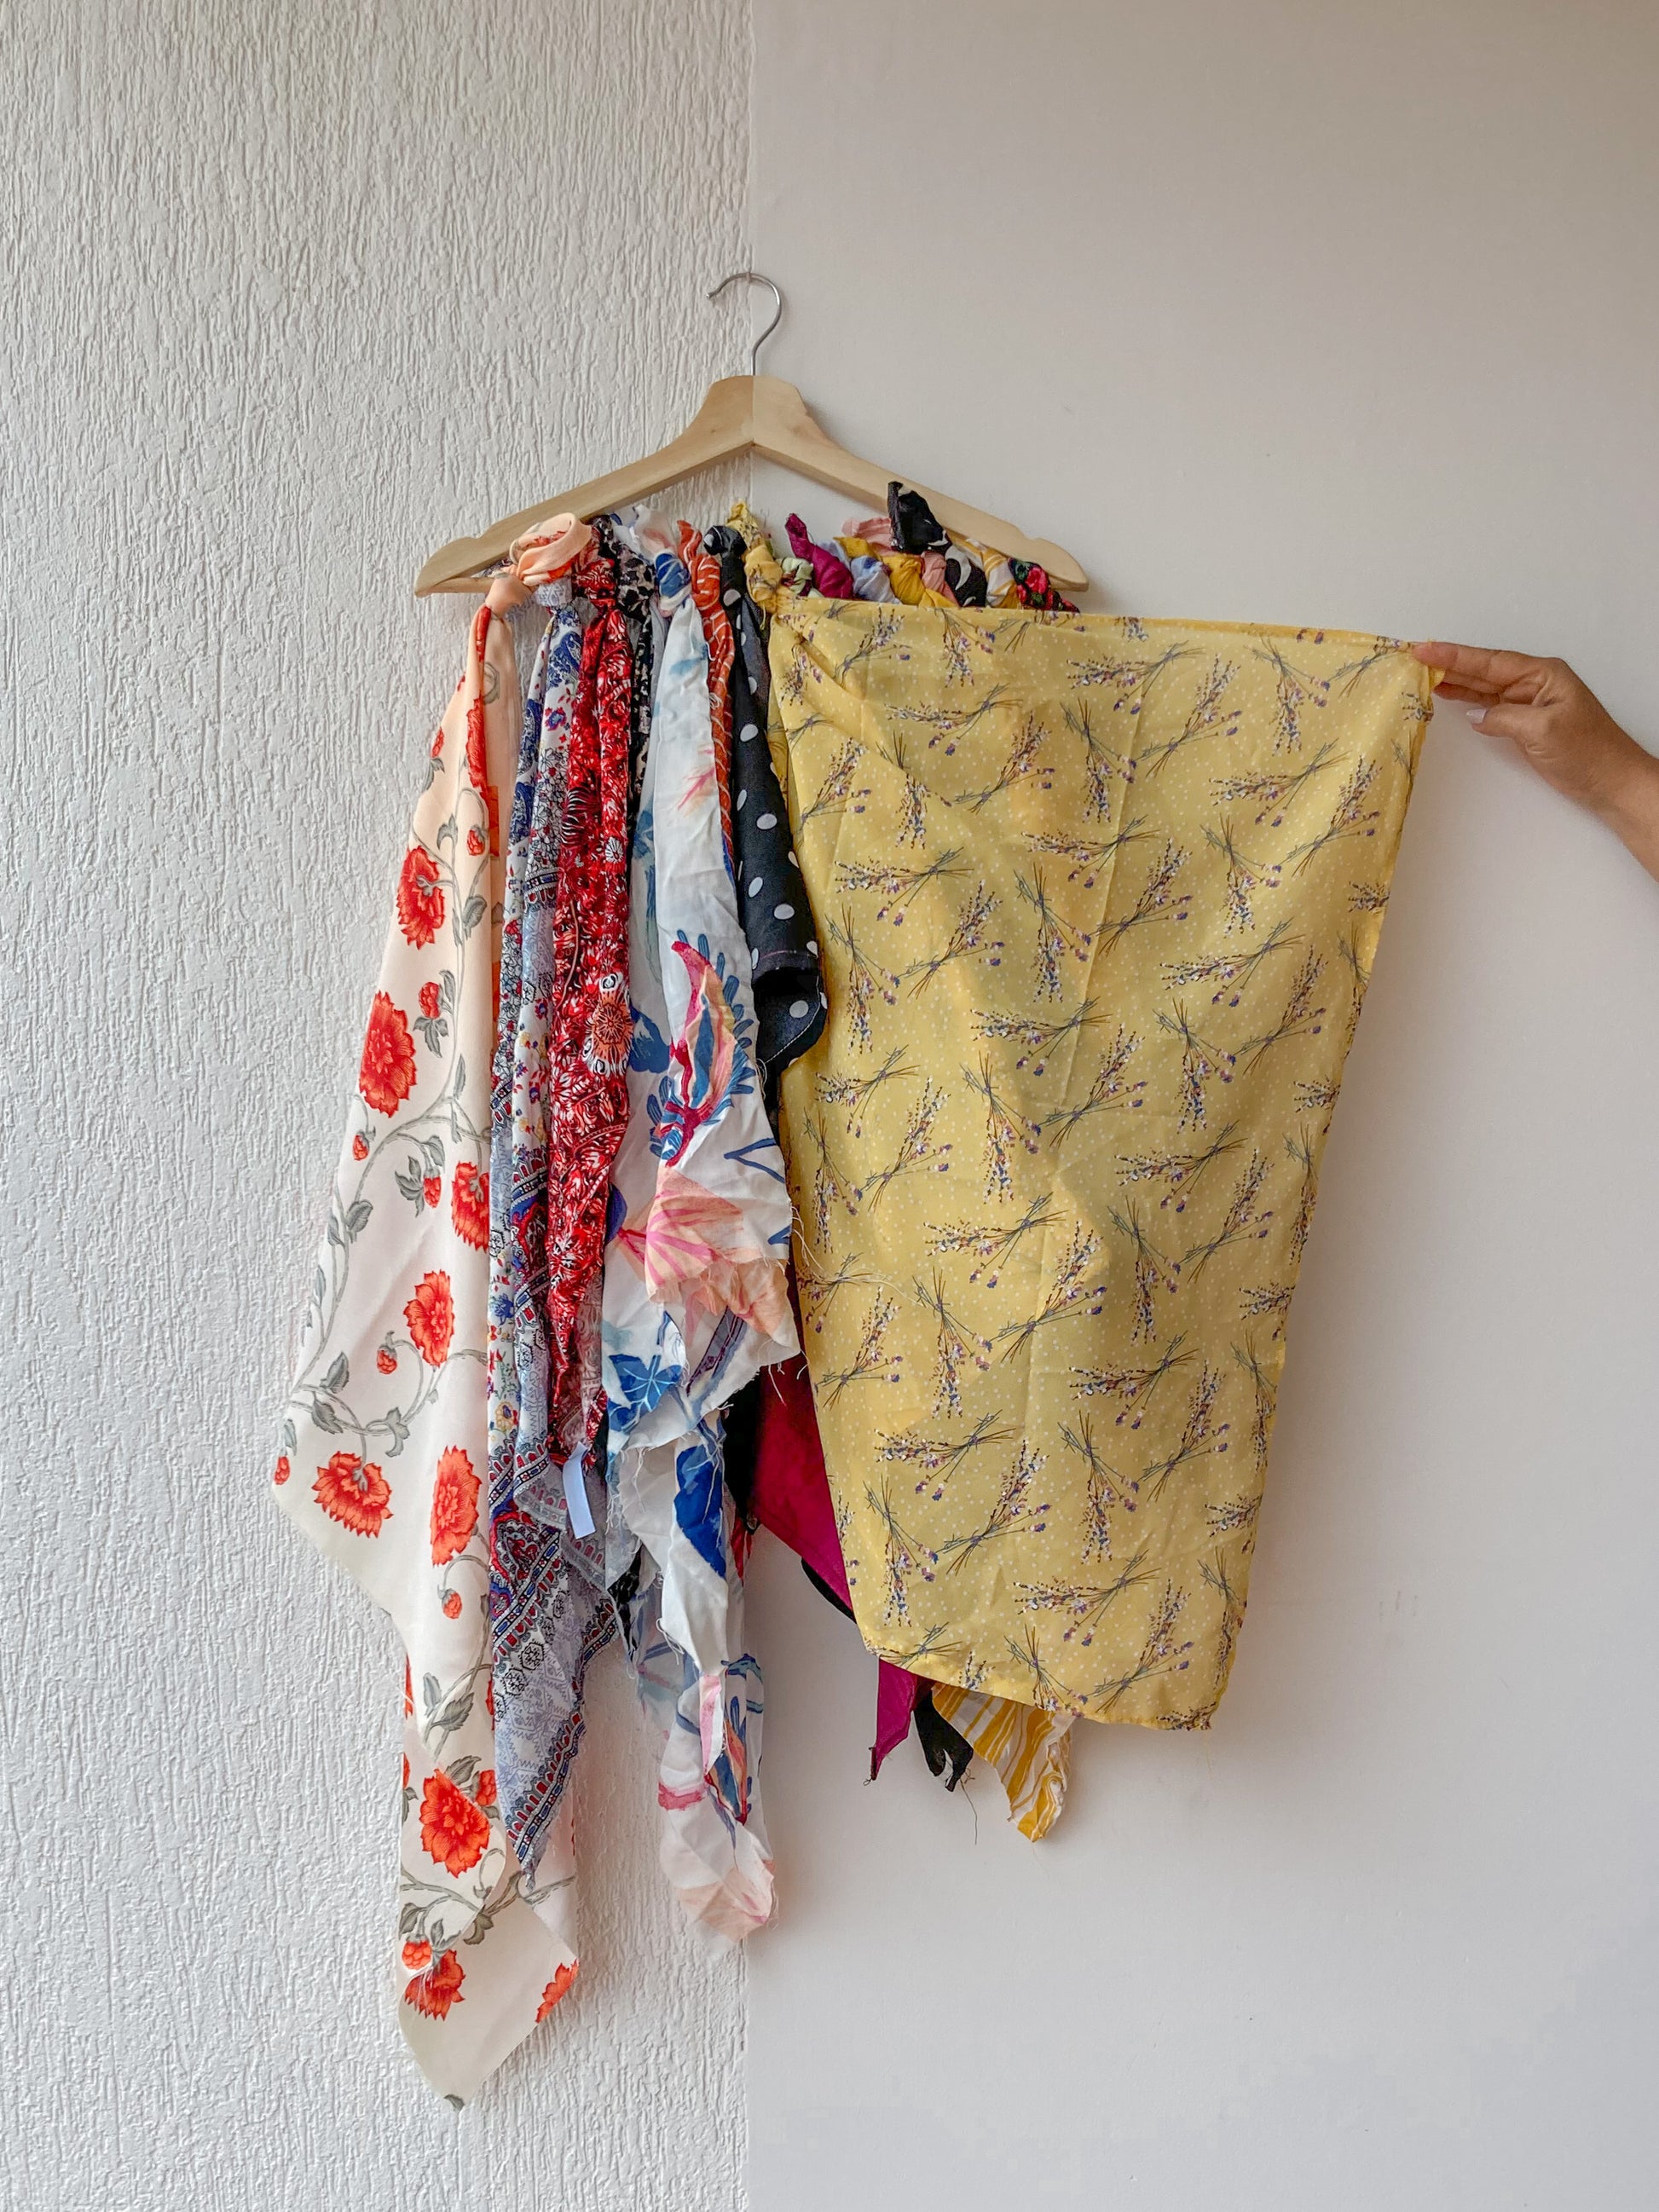 Bandana estampada amarilla con flores pequeñas en colores pastel,  para el cabello, amarrar a la cintura, amarrar en el bolso. accesorios conscientes hechos con los sobrantes de la producción.